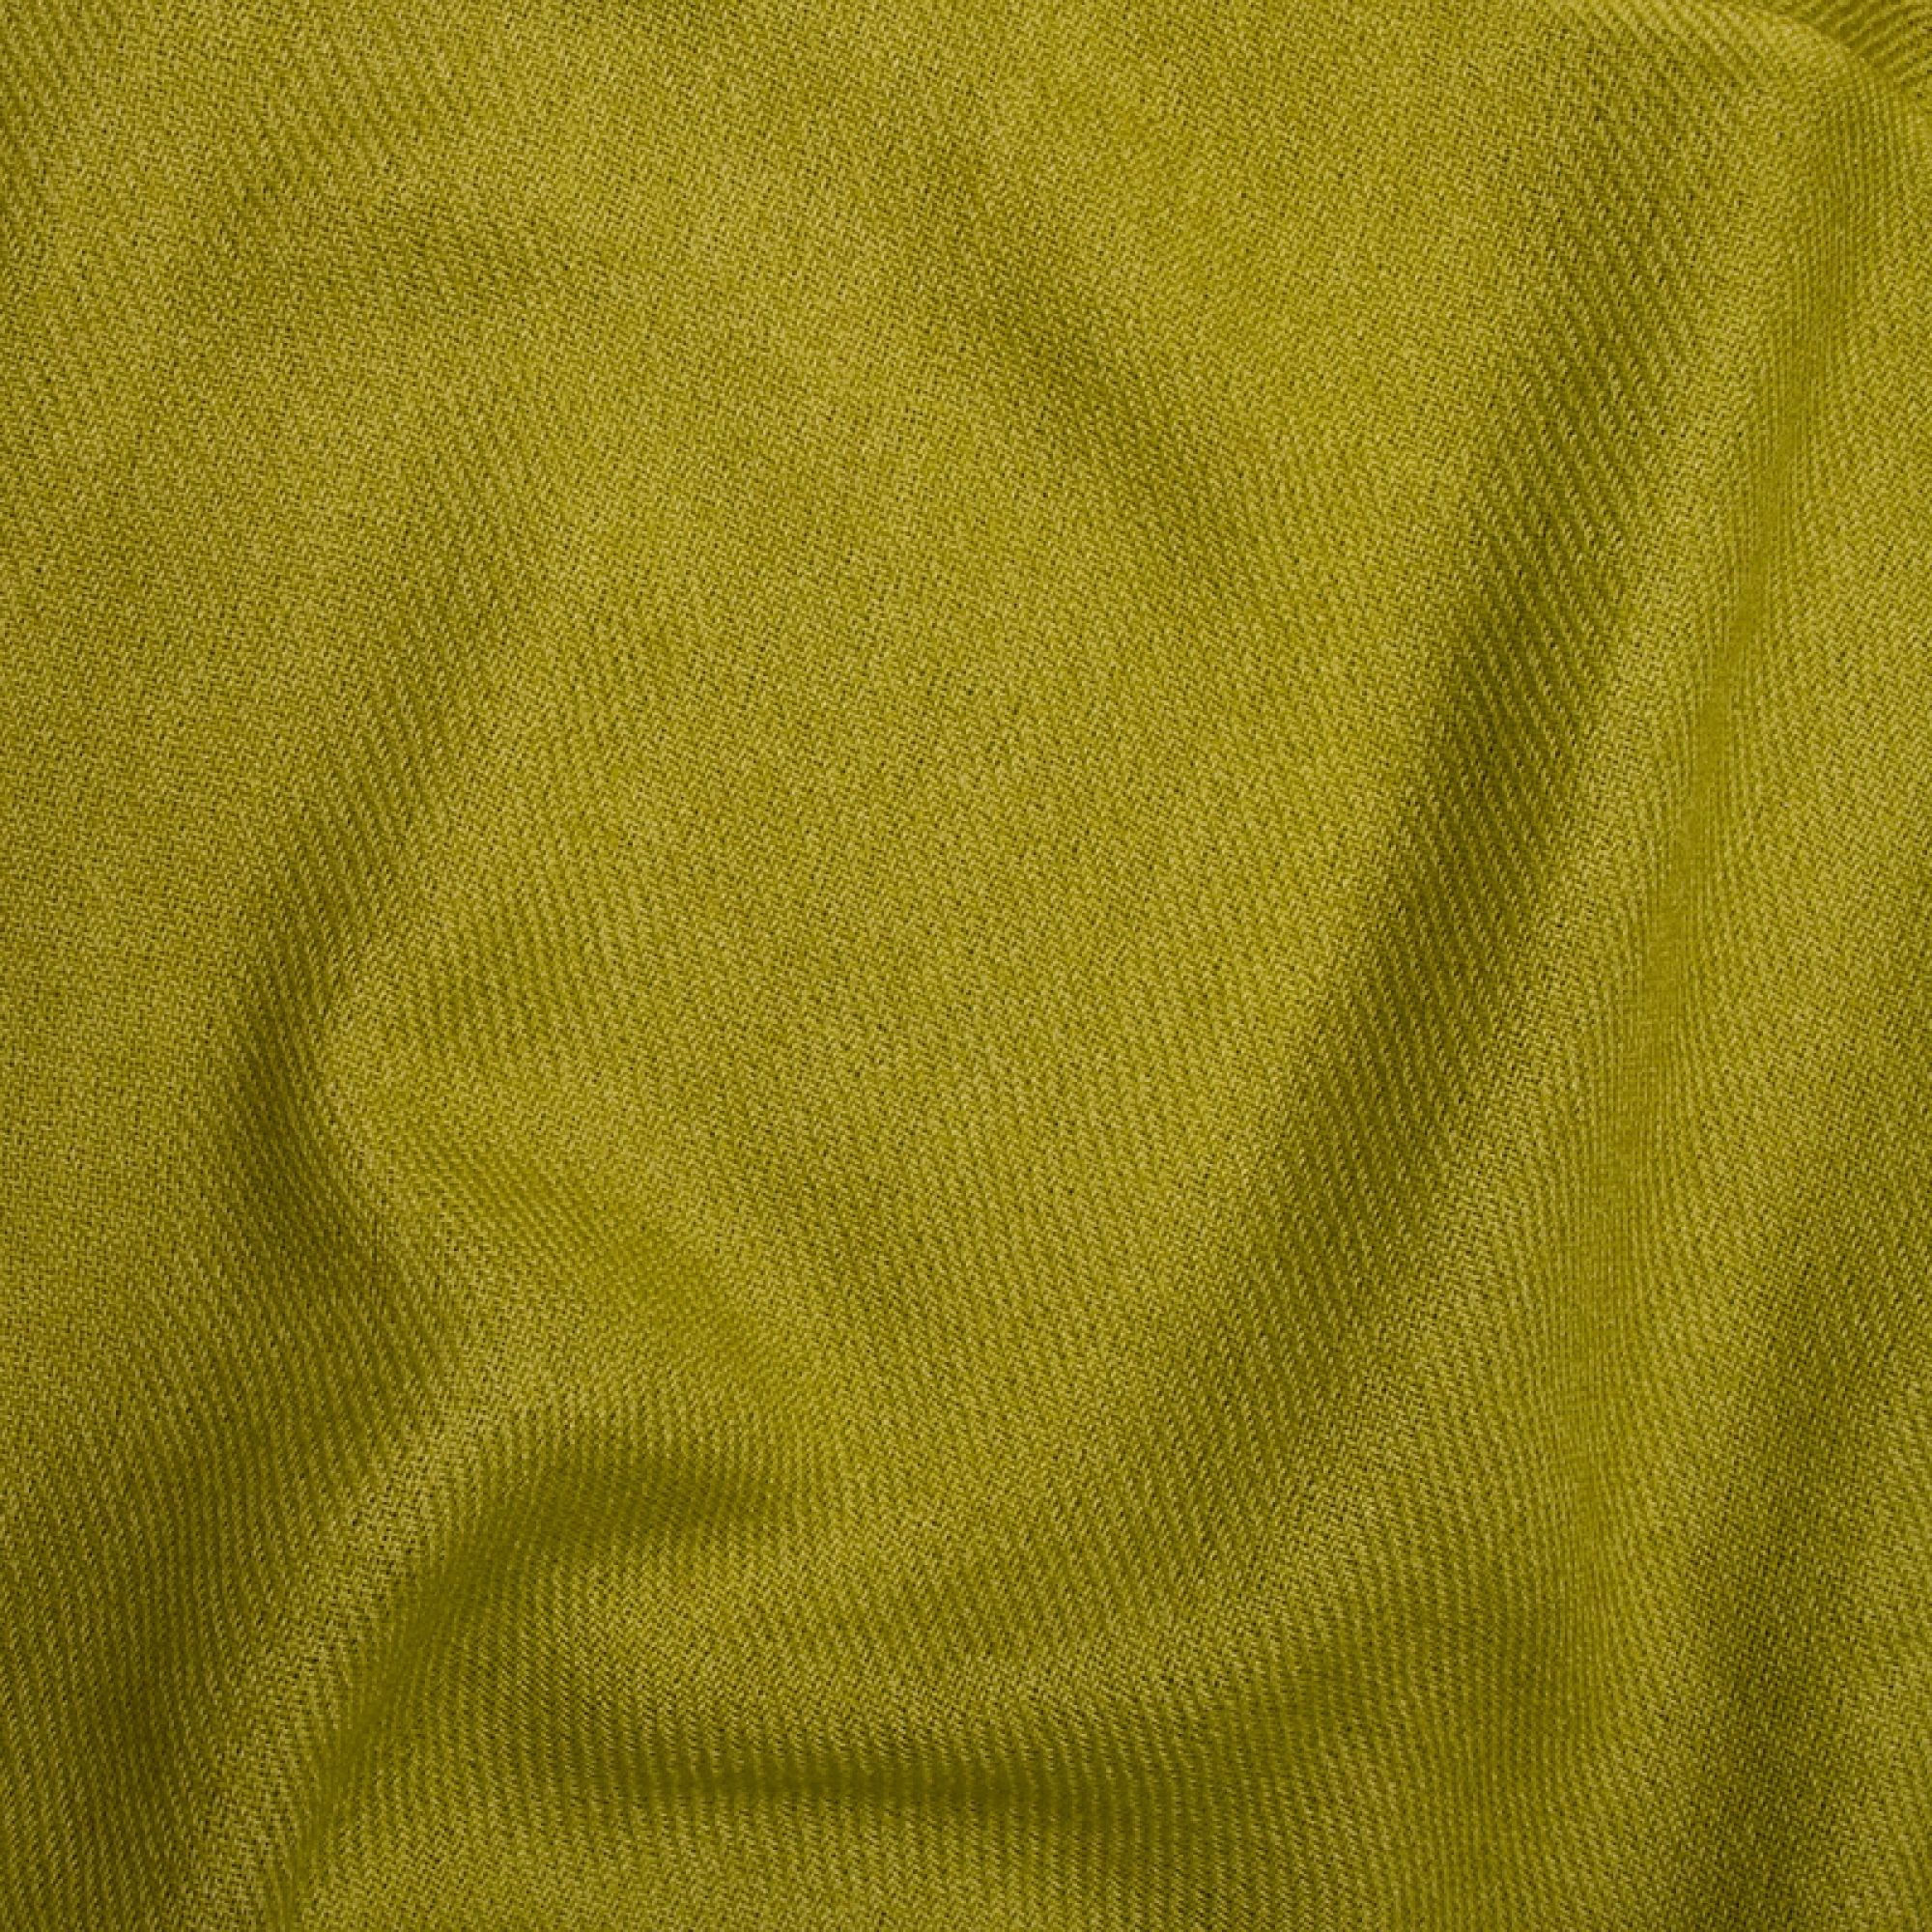 Cachemire accessoires couvertures plaids toodoo plain s 140 x 200 vert petillant 140 x 200 cm